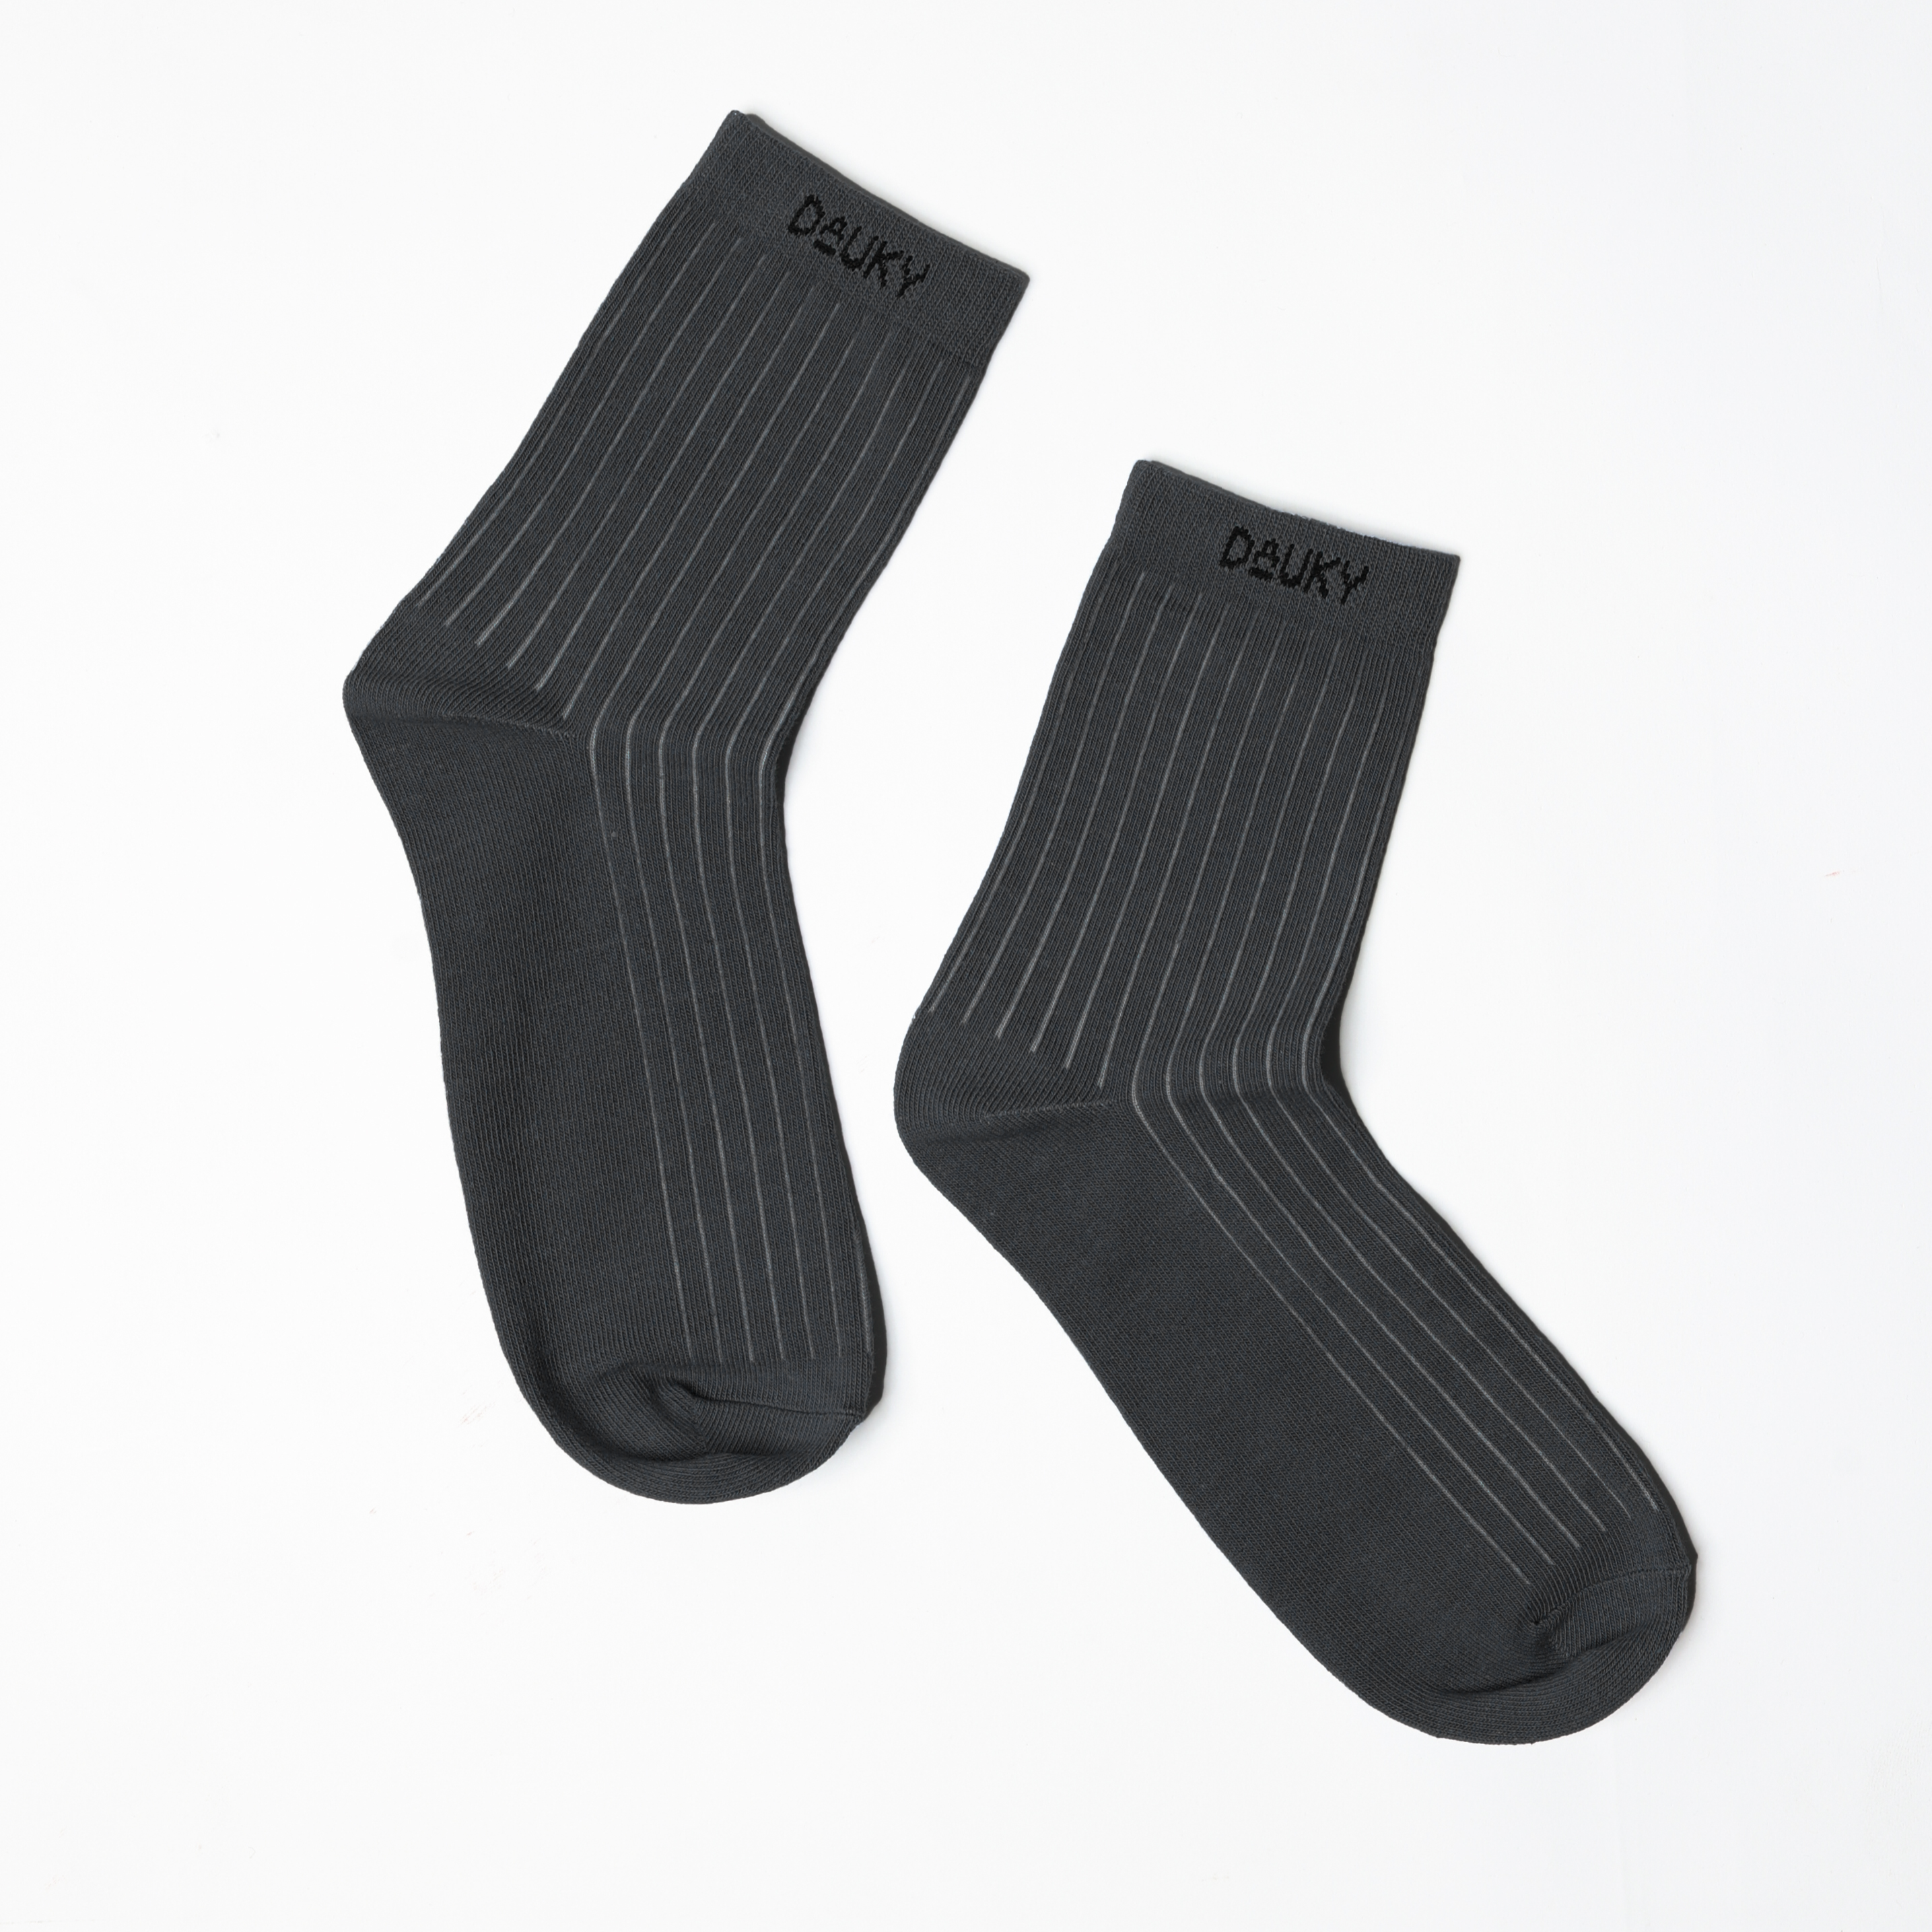 Dauky Kaos kaki Basic Rib Socks - Hitam